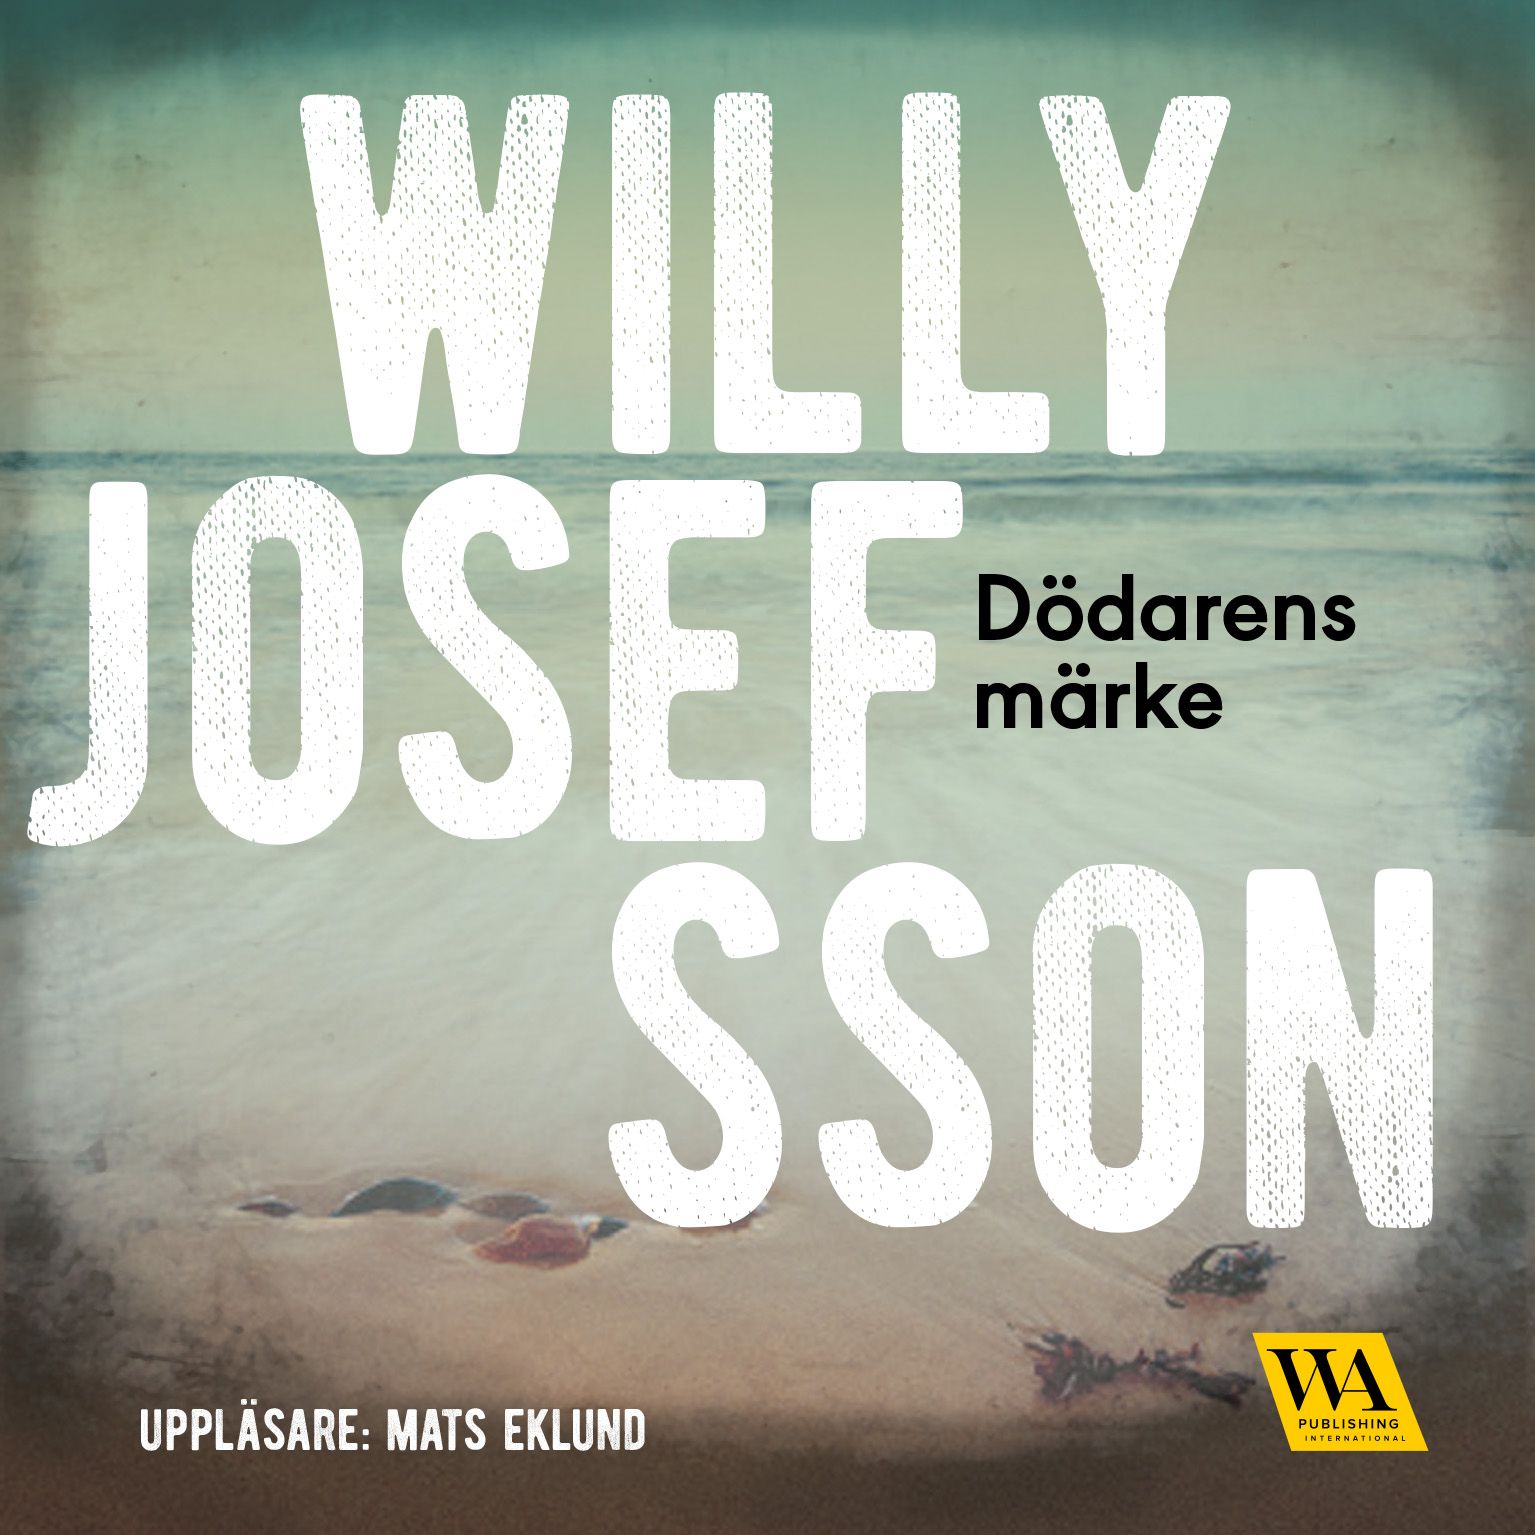 Dödarens märke, ljudbok av Willy Josefsson